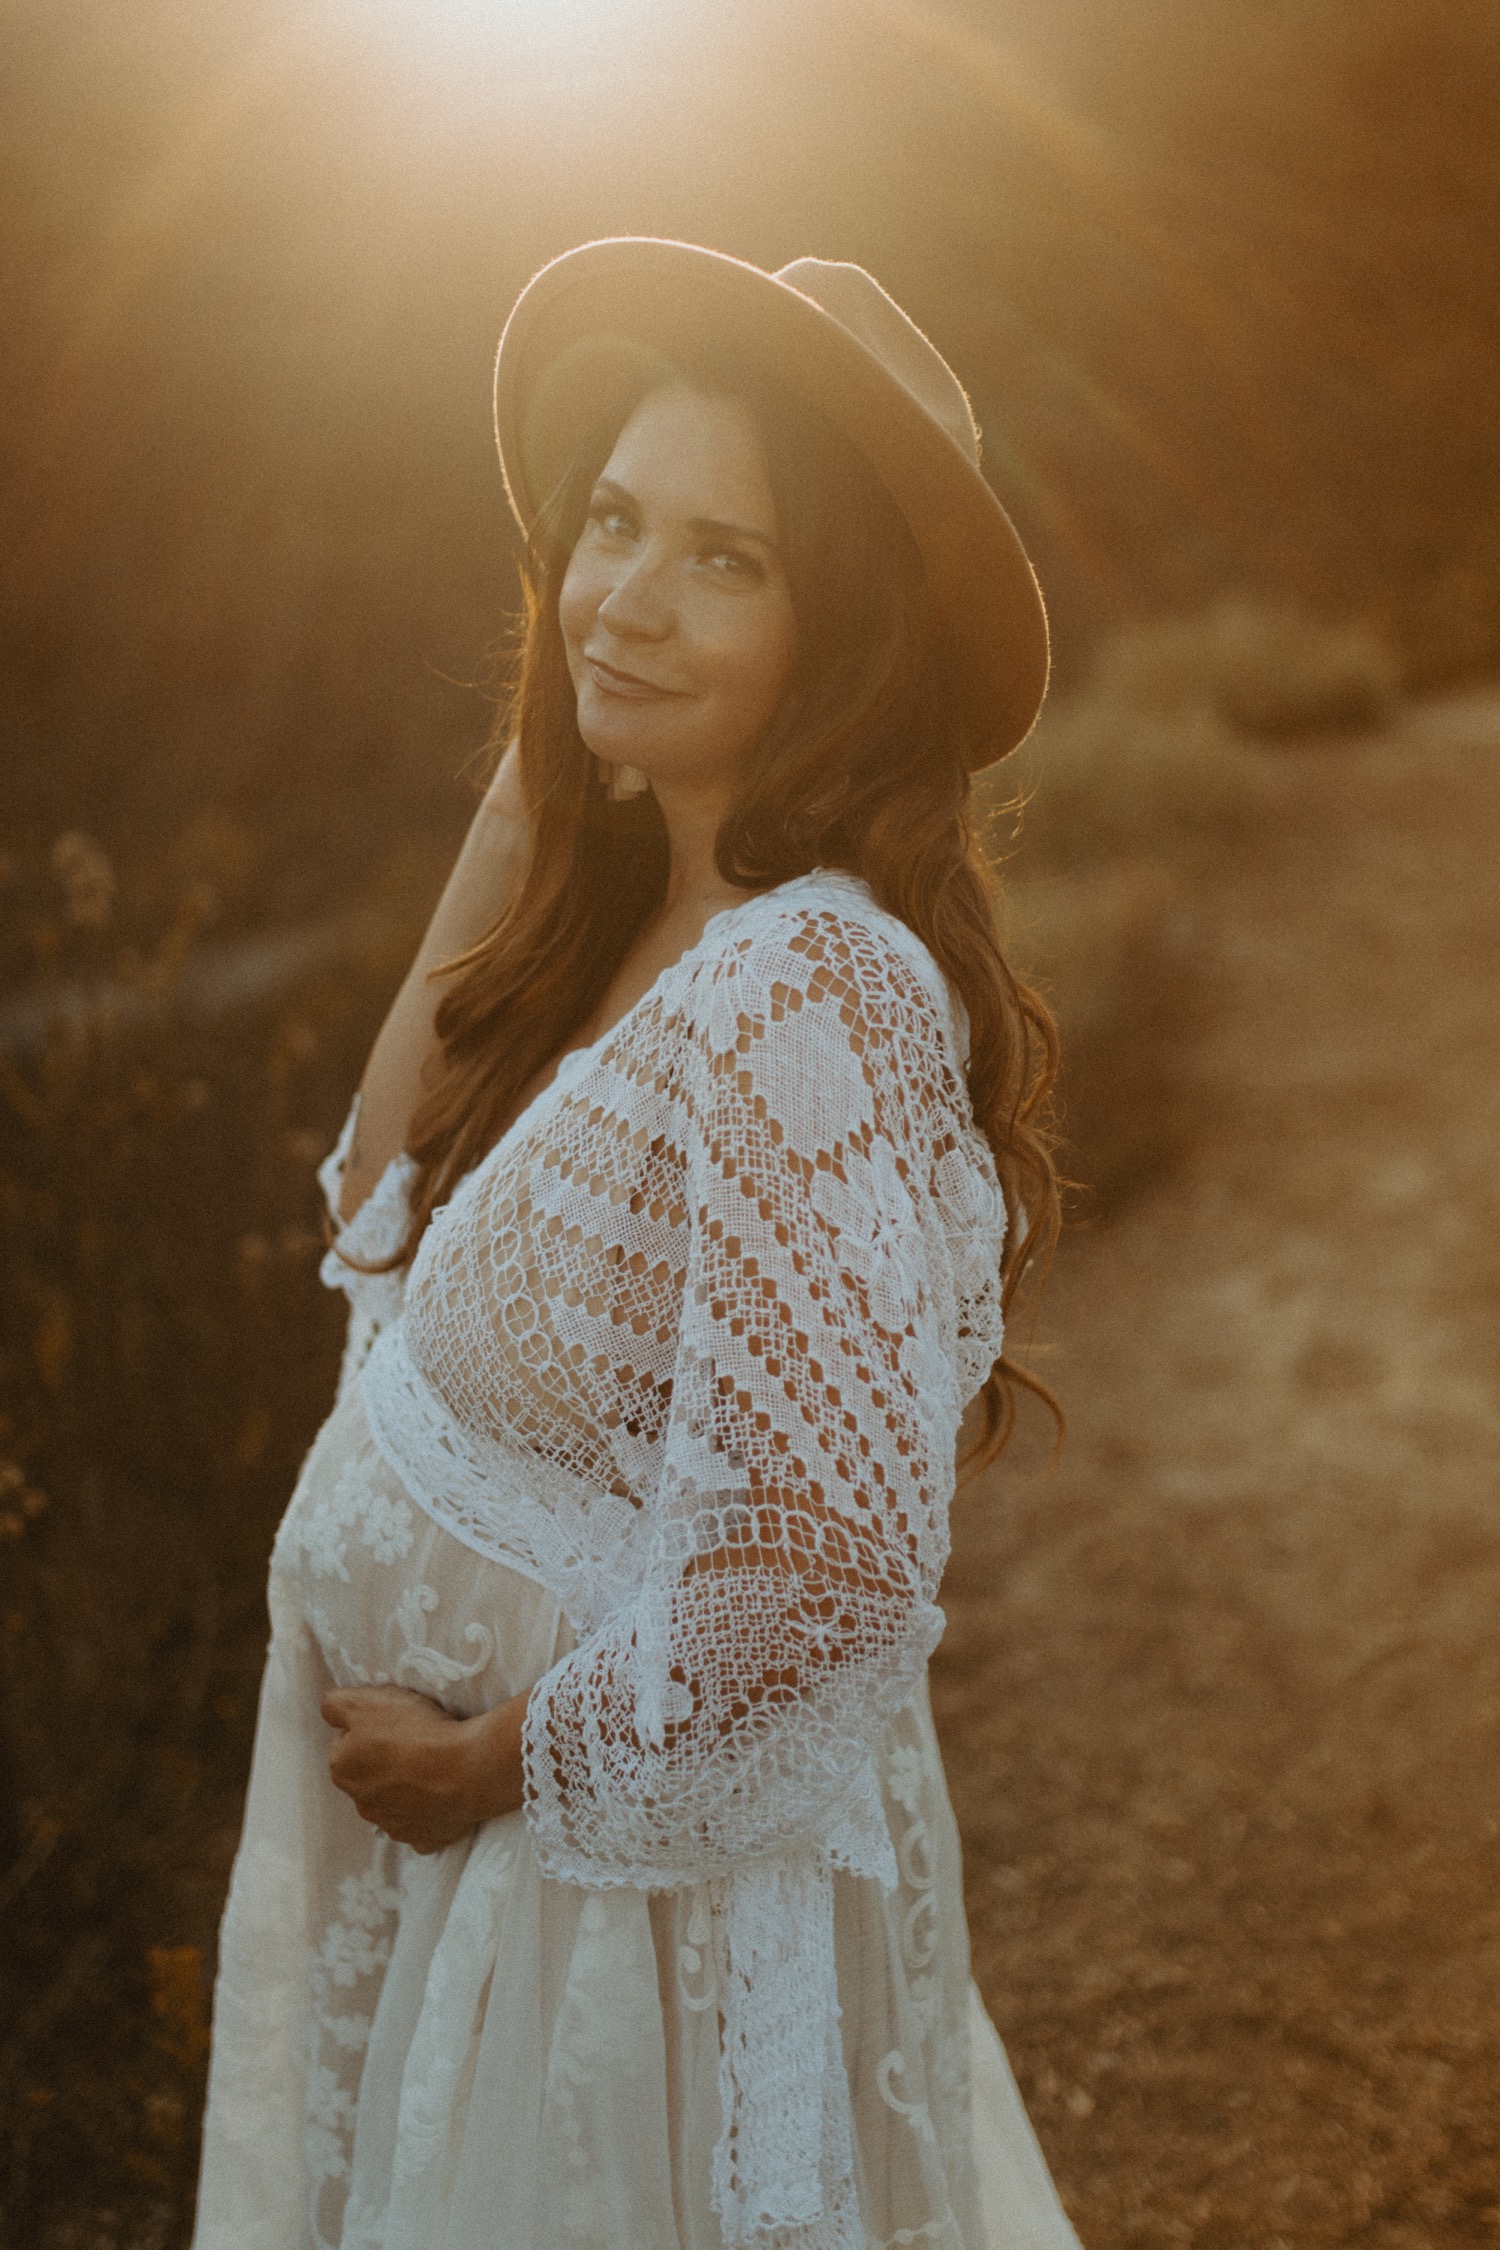 Boho Summer Maternity Photo Session - Kaitlyn Rose Photography